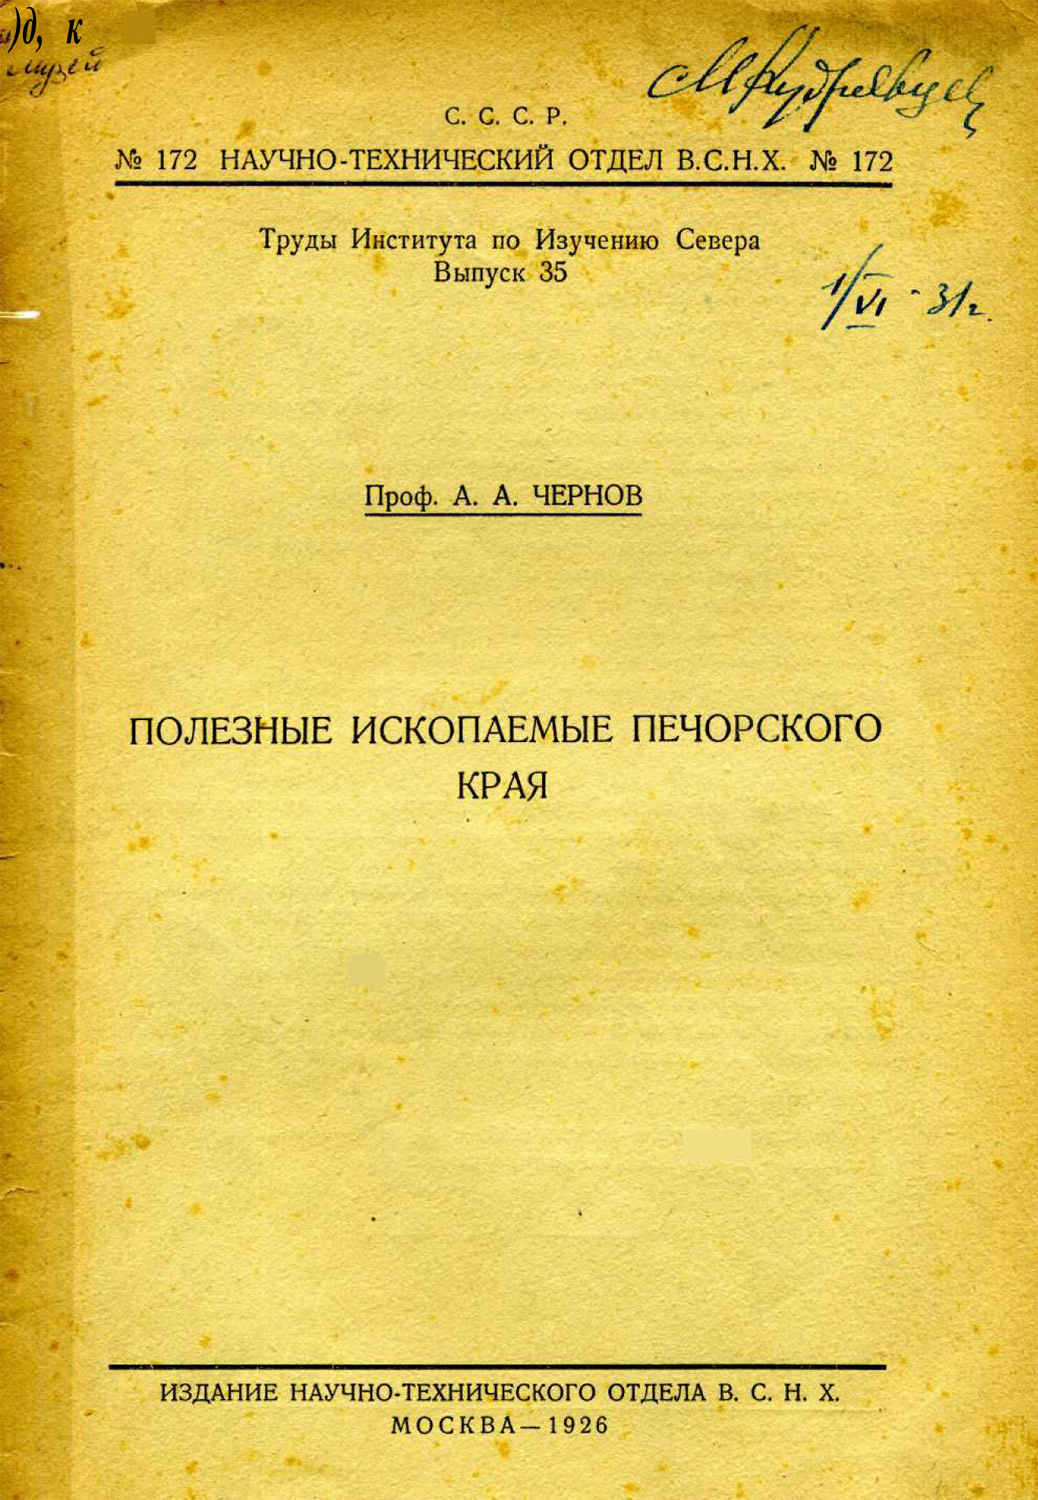 1926 г. Чернов А. А. Полезные ископаемые Печорского края